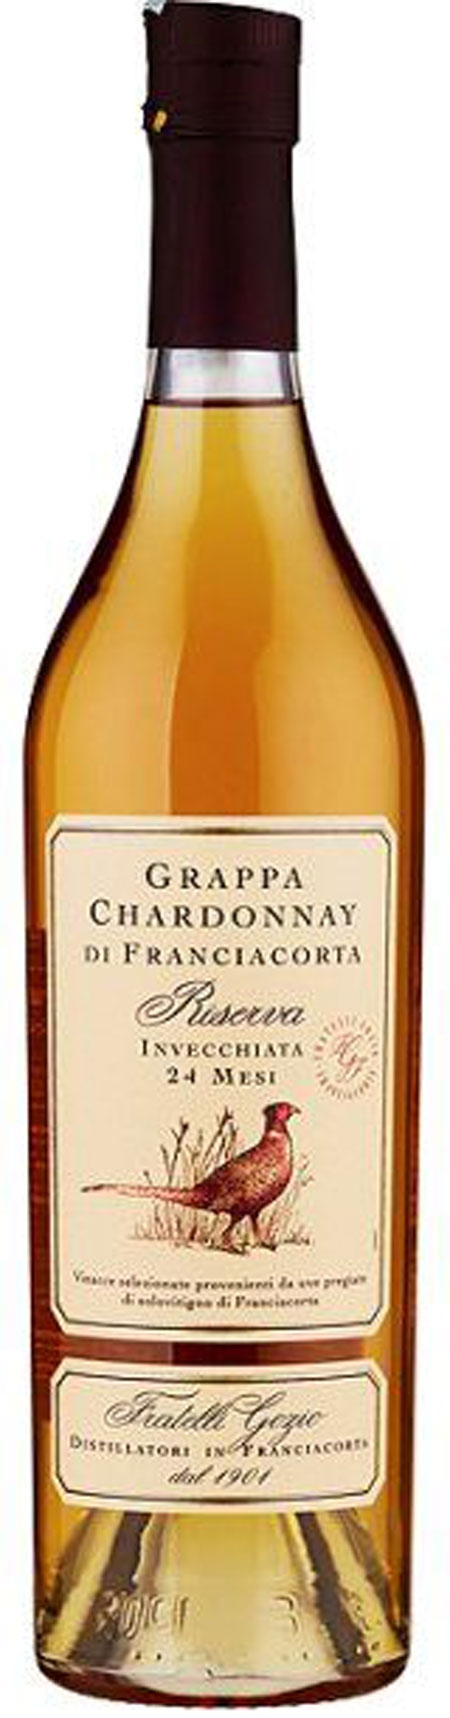 Grappa Franciacorte Chardonnay Riserva